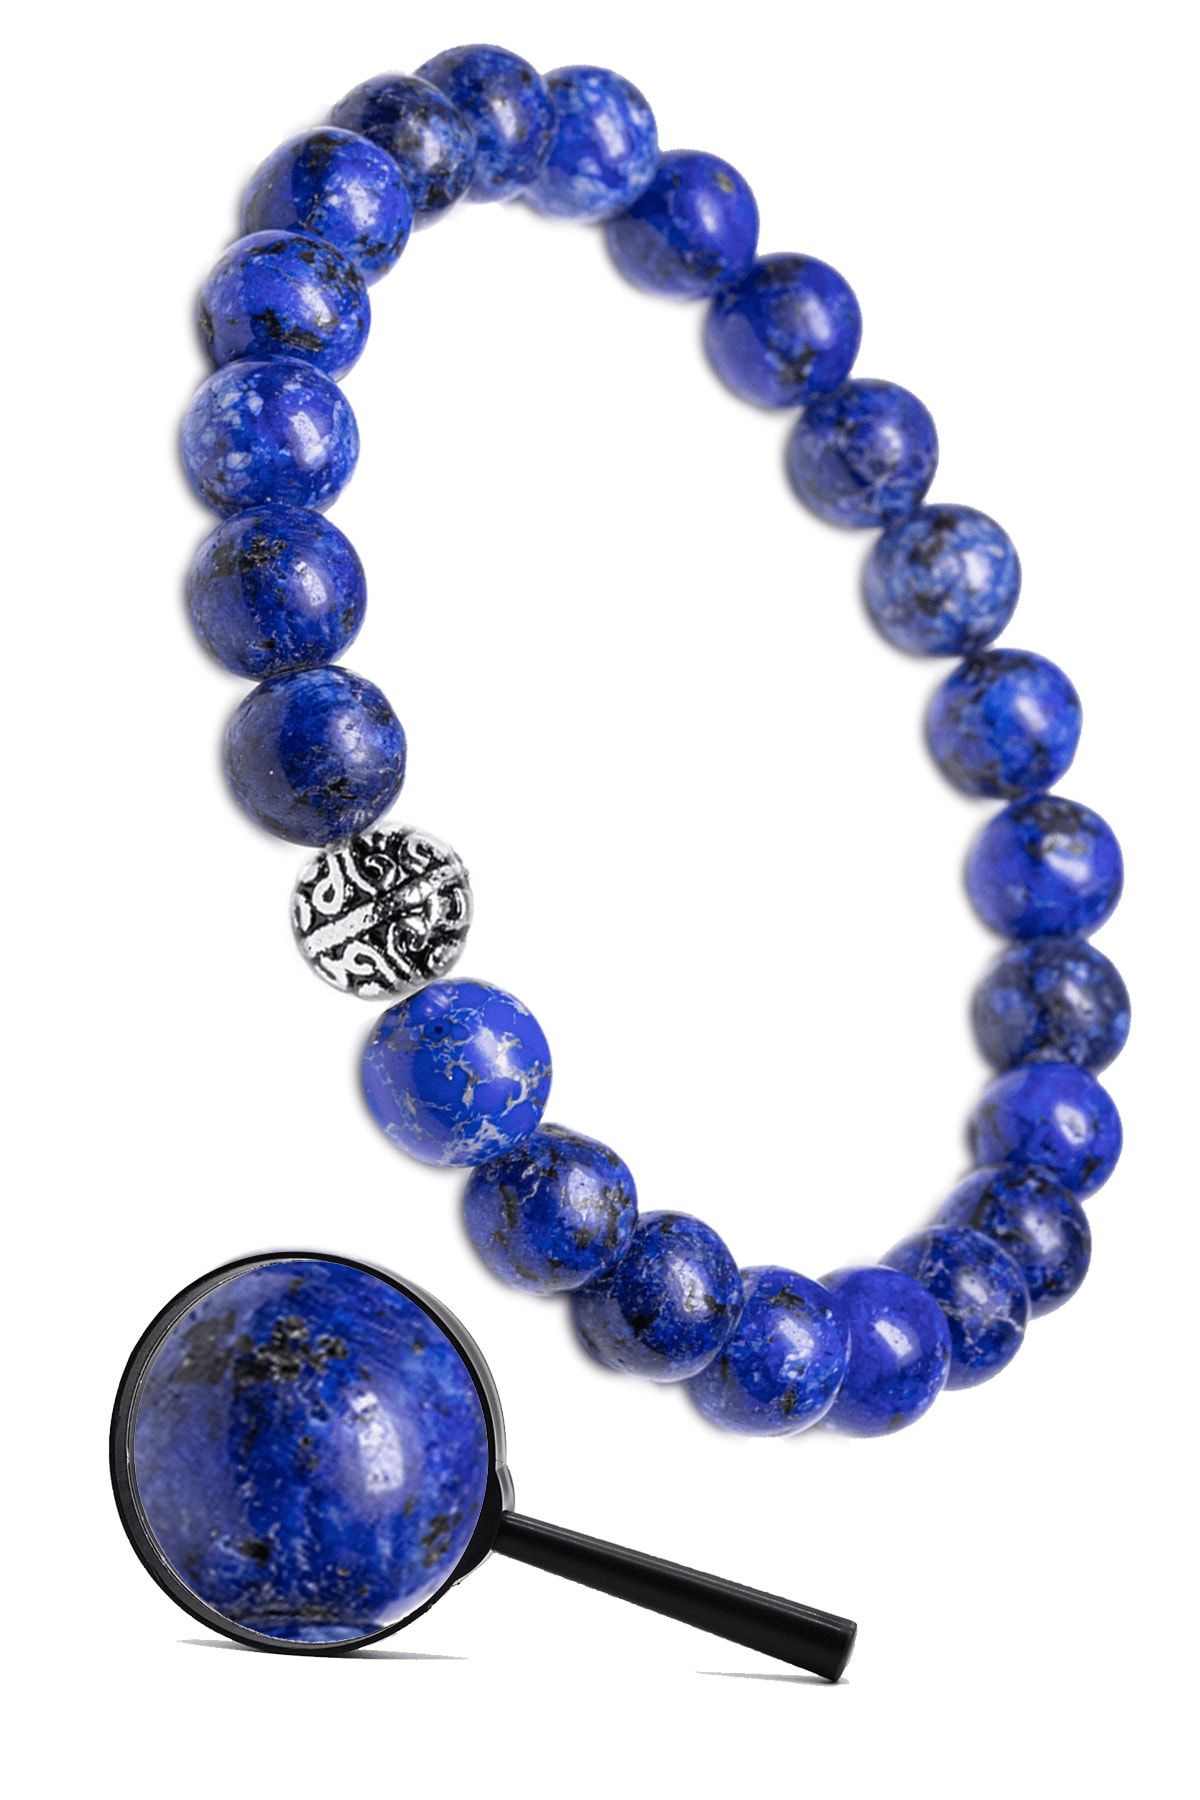 Tesbih Atölyesi Sertifikalı Gümüş Aparatlı Doğal Lapis Lazuli Taşı Bileklik